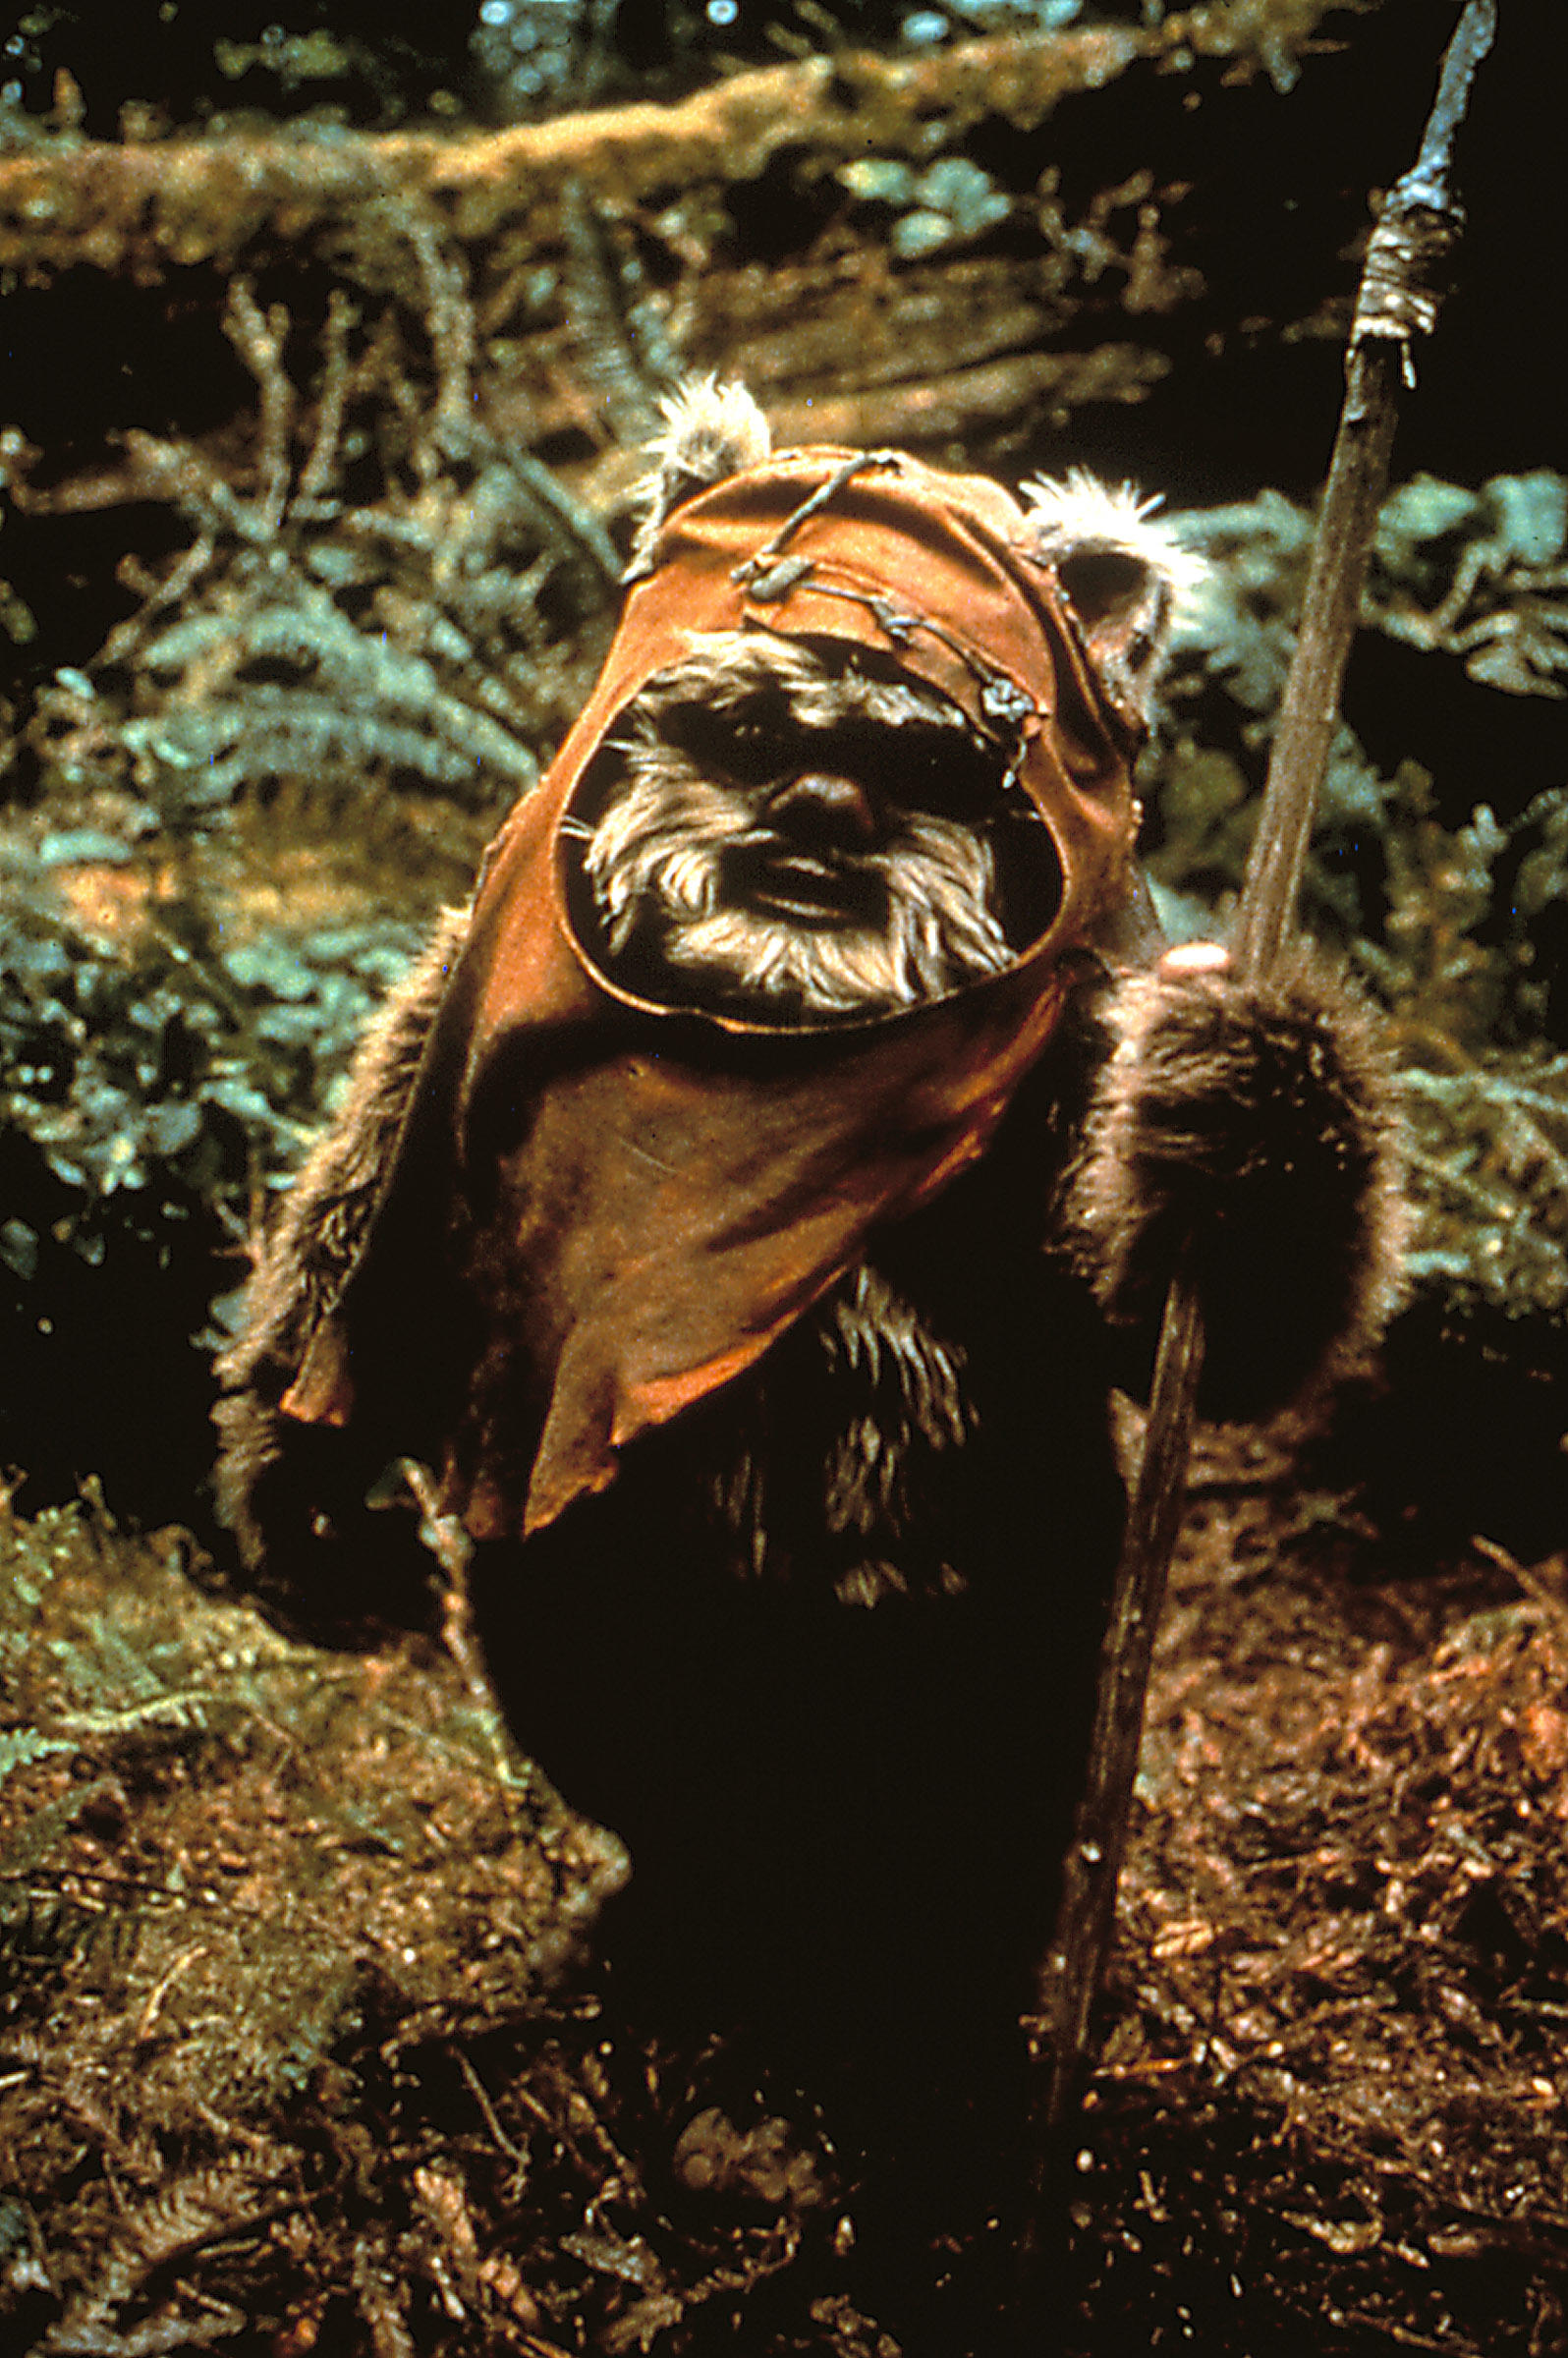   Warwicks erste Filmrolle war in Star Wars: Episode VI – Die Rückkehr der Jedi-Ritter als Ewok Wicket W